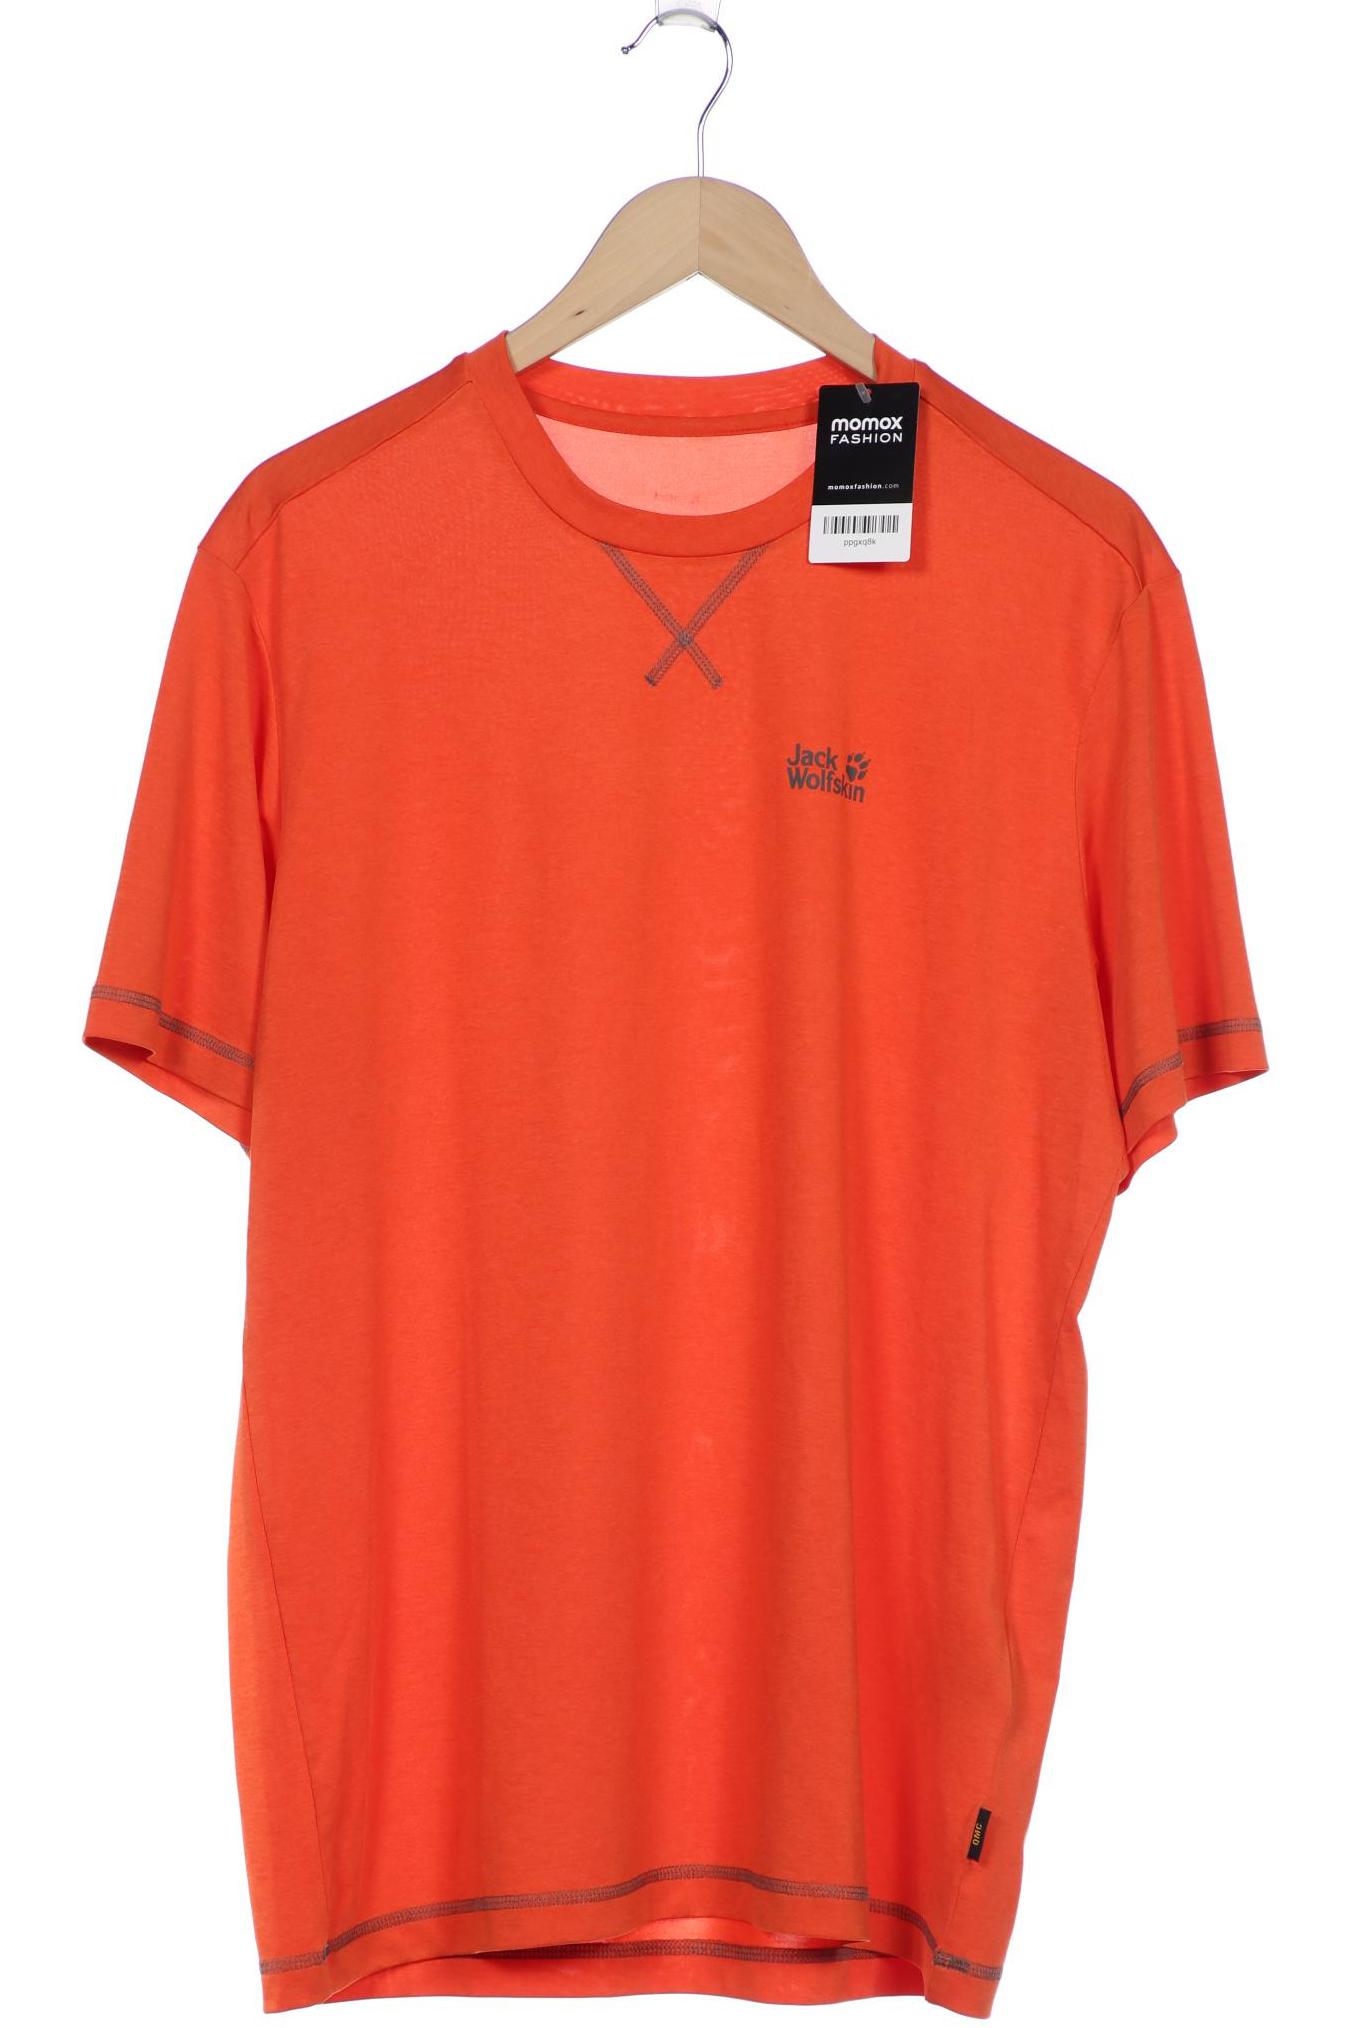 Jack Wolfskin Herren T-Shirt, orange, Gr. 56 von Jack Wolfskin